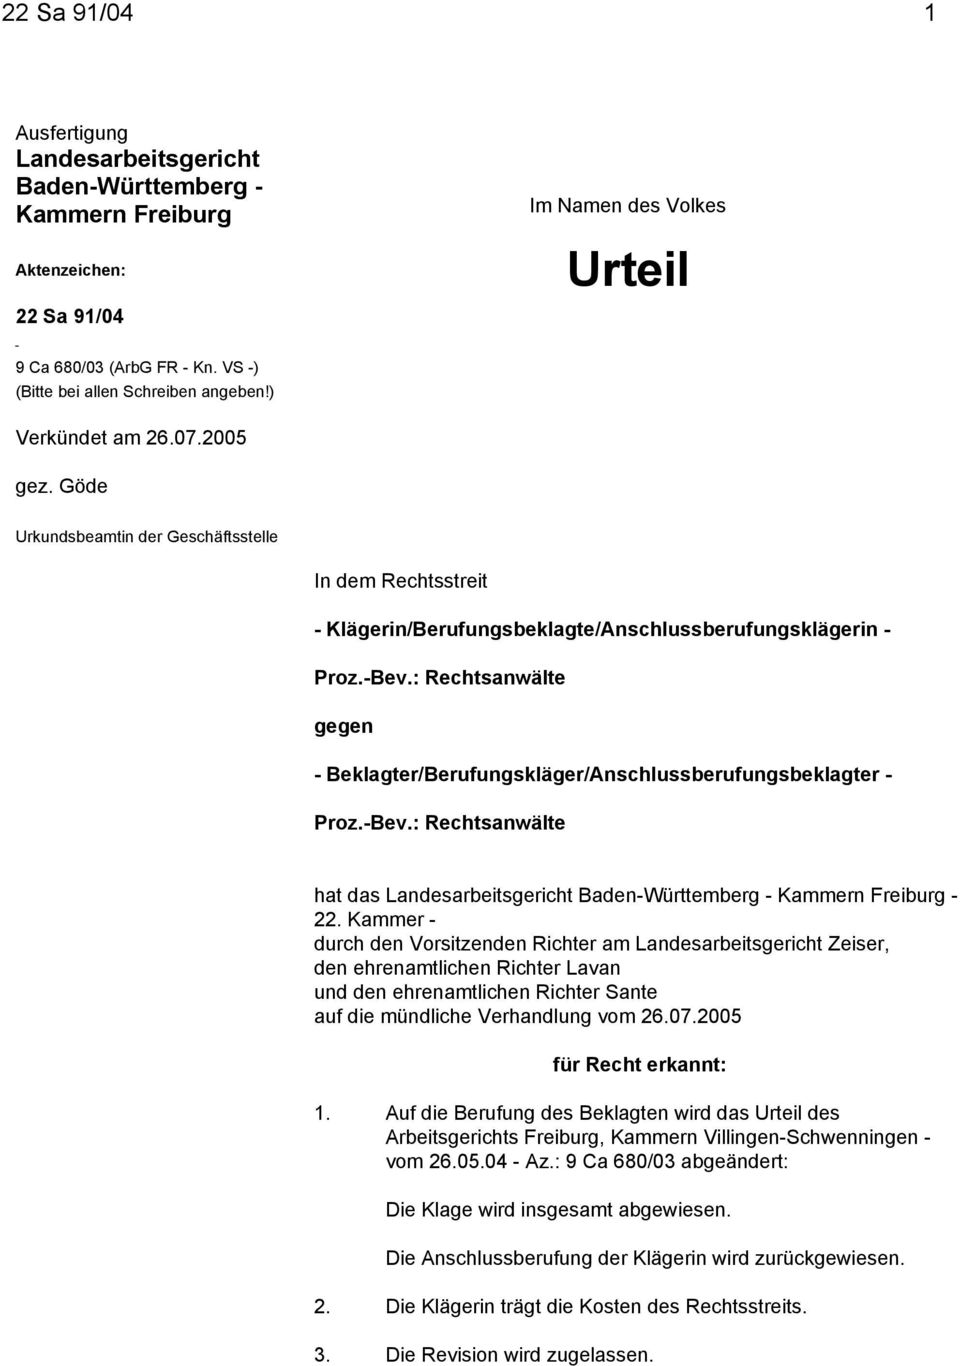 : Rechtsanwälte gegen - Beklagter/Berufungskläger/Anschlussberufungsbeklagter - Proz.-Bev.: Rechtsanwälte hat das Landesarbeitsgericht Baden-Württemberg - Kammern Freiburg - 22.